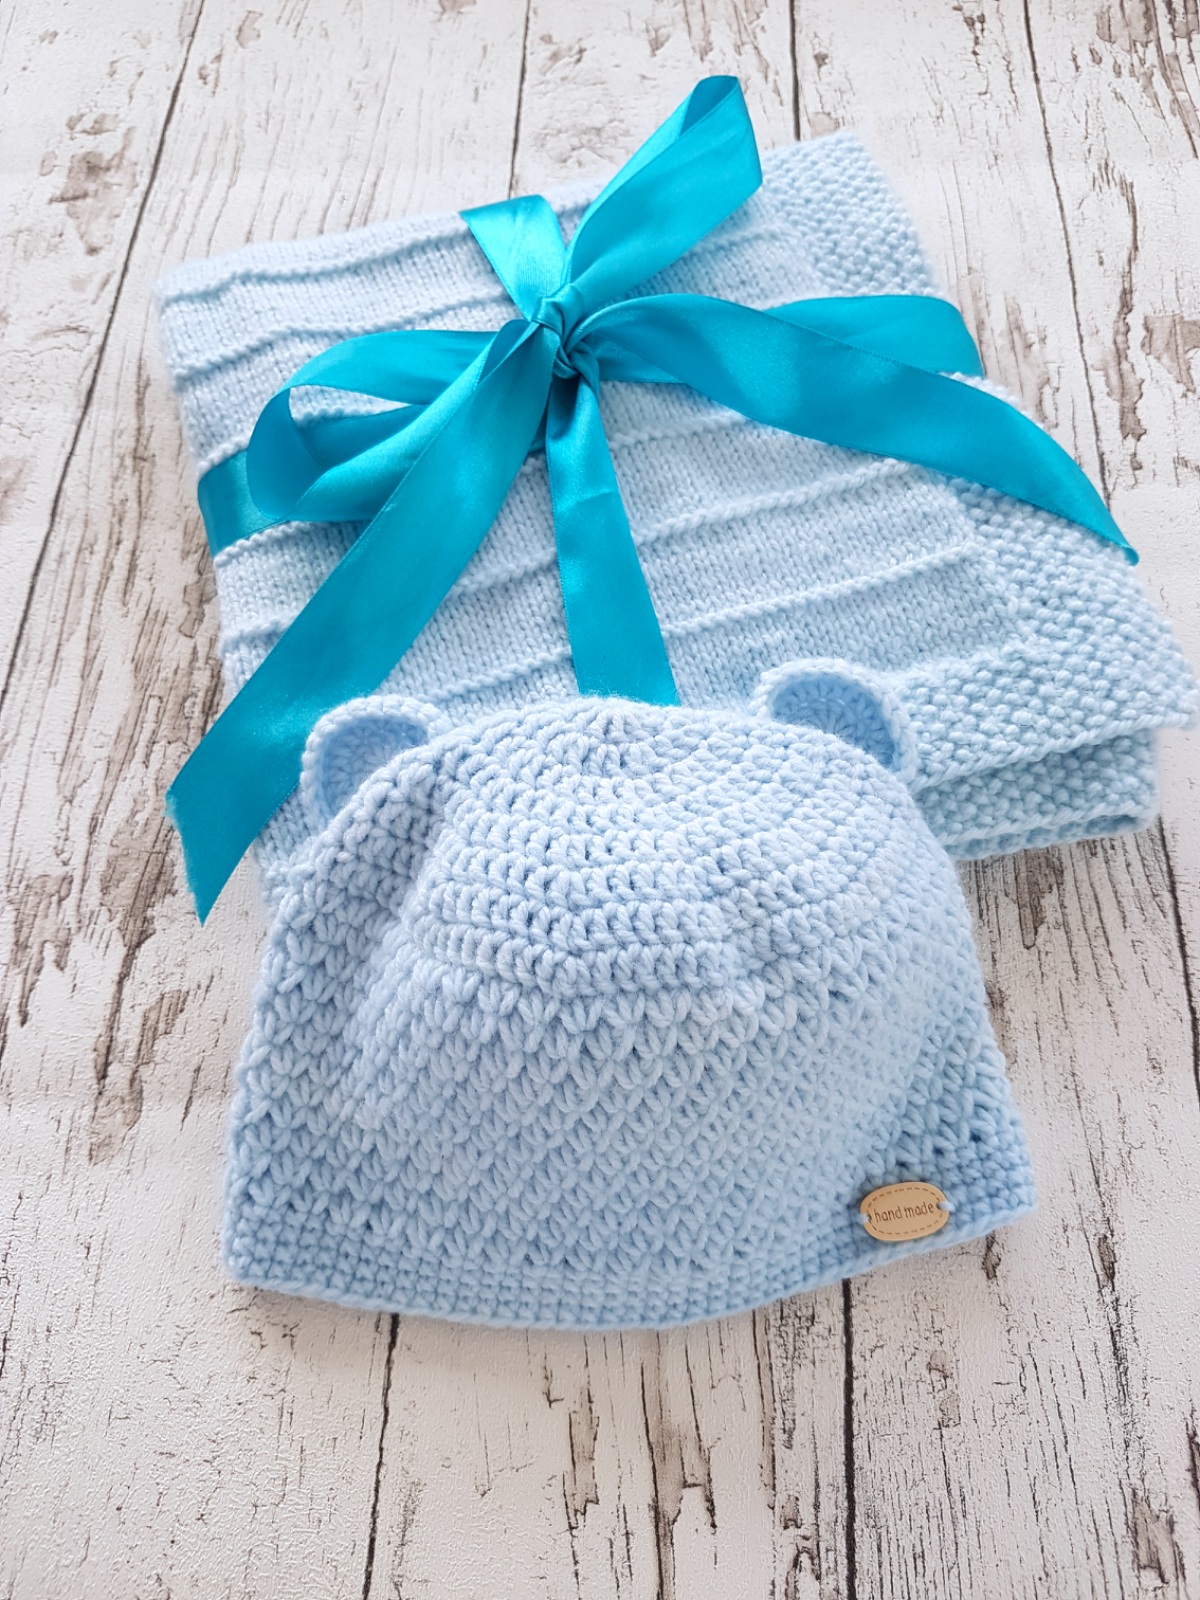 Crochet Blue Little Bear Hat